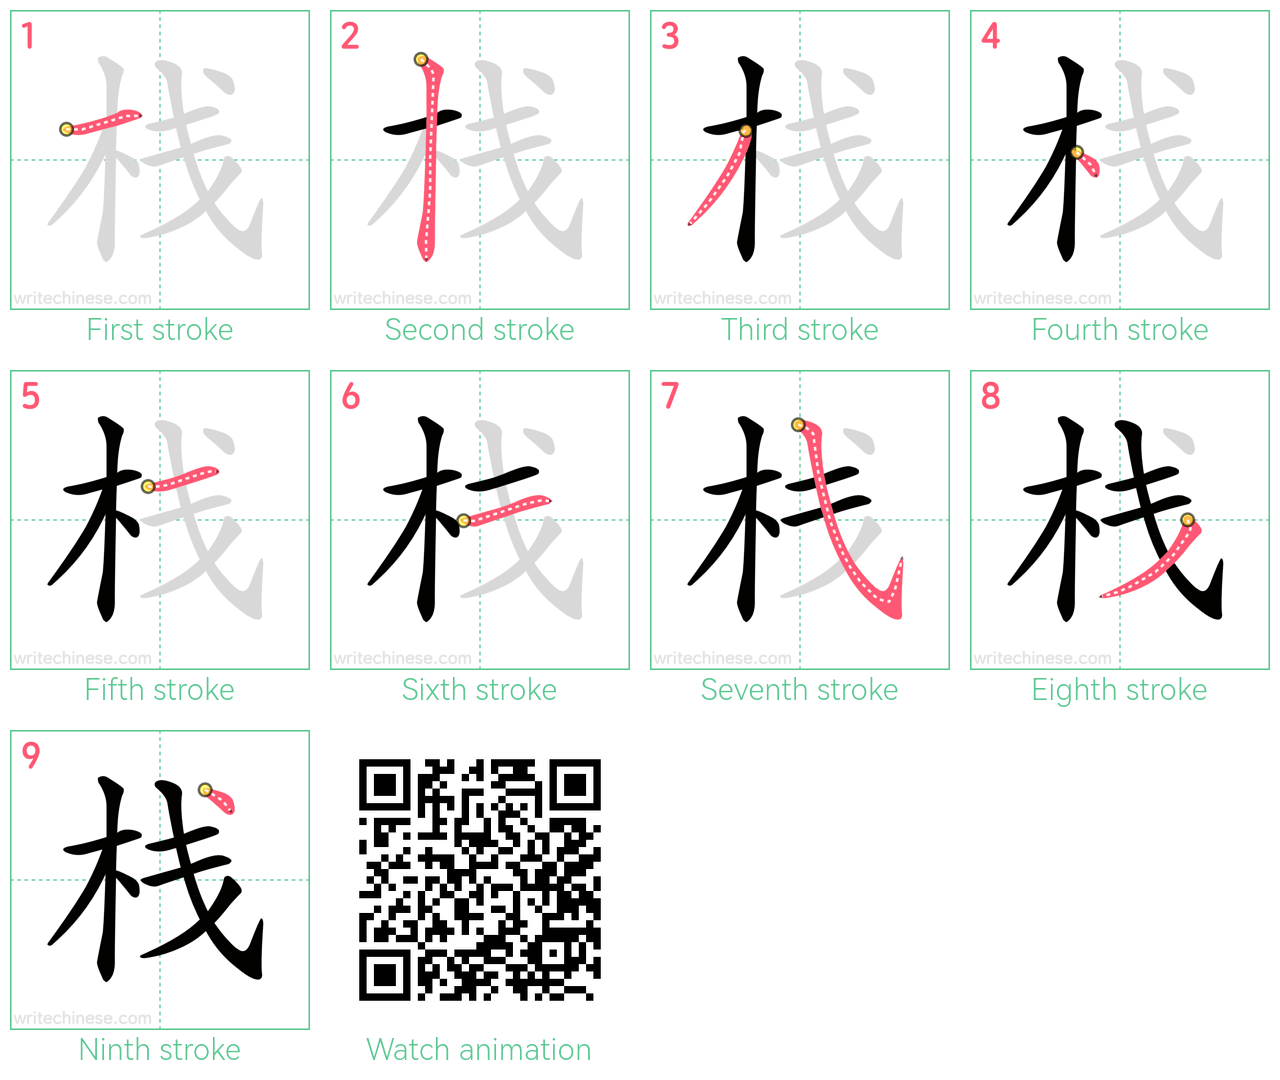 栈 step-by-step stroke order diagrams